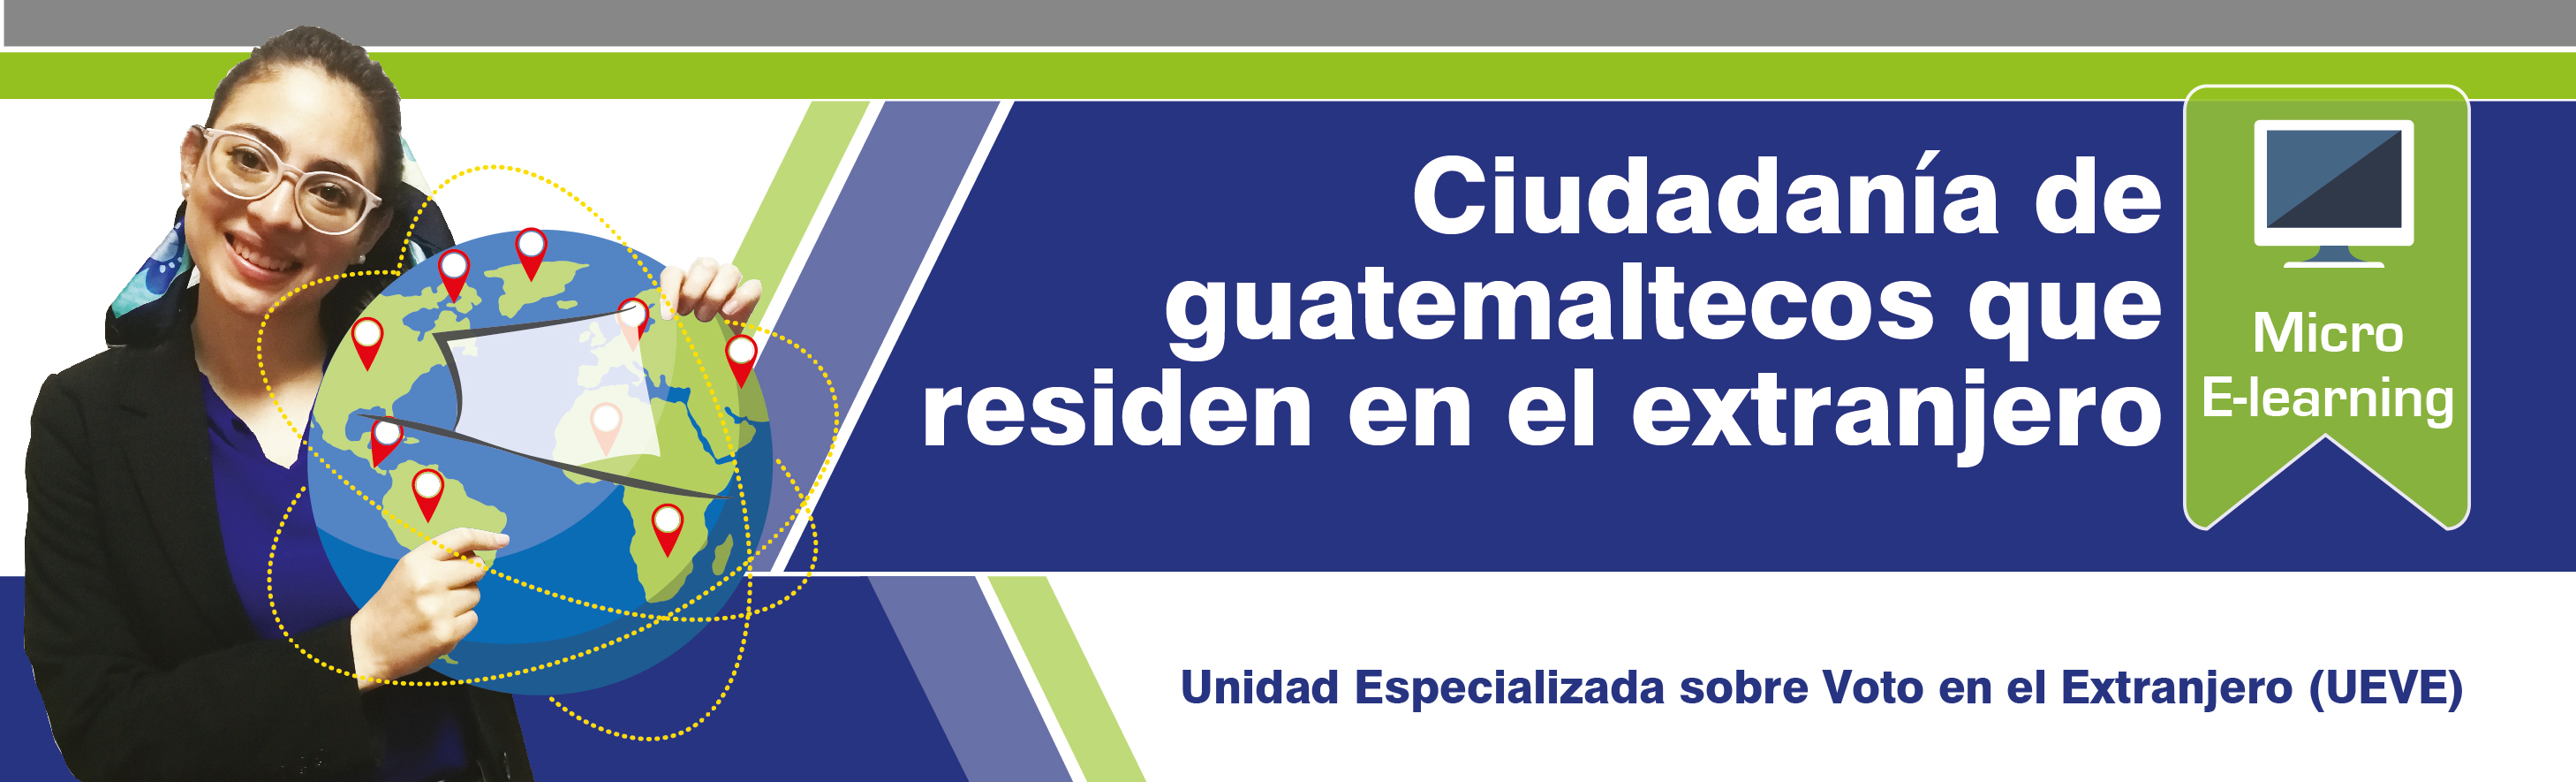 Ciudadanía de guatemaltecos que residen en el extranjero F